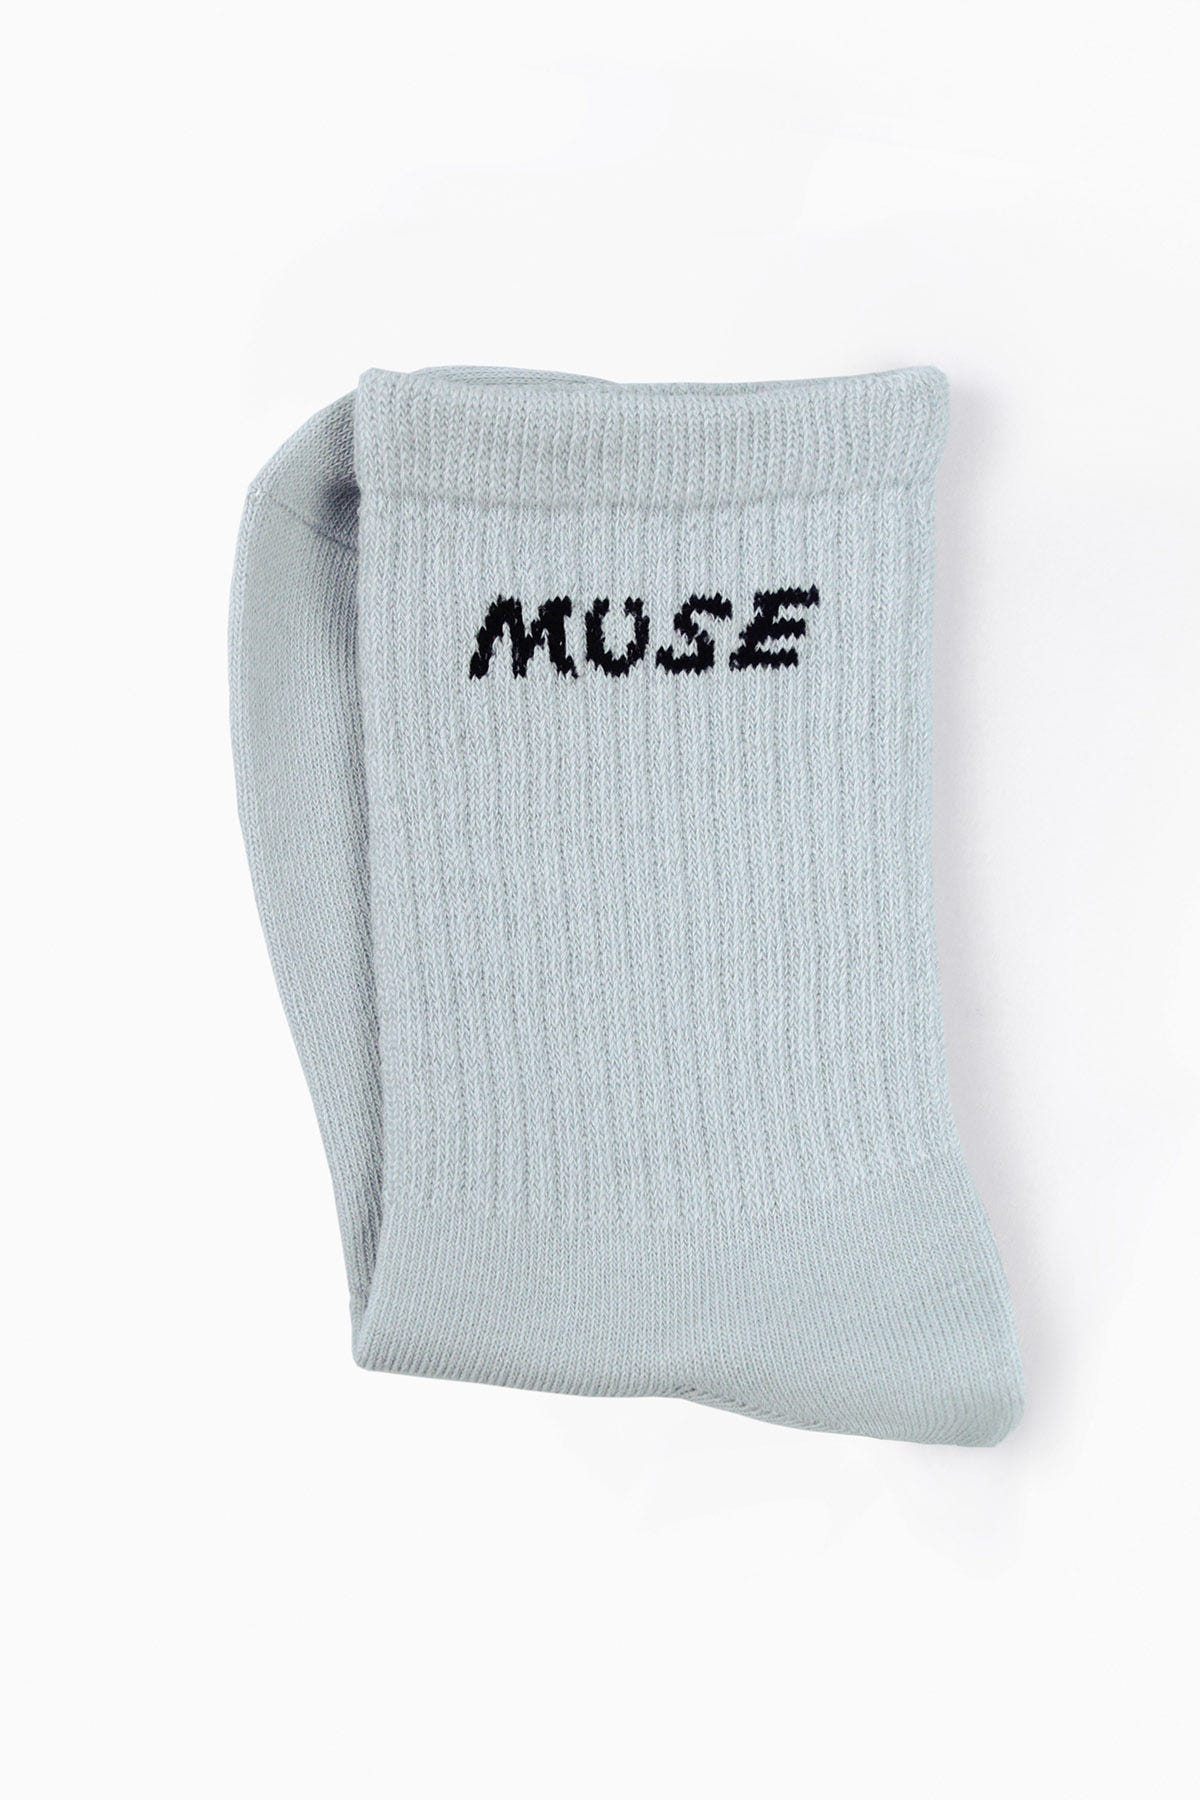 Muses Cushion Calf Length Crew Sock